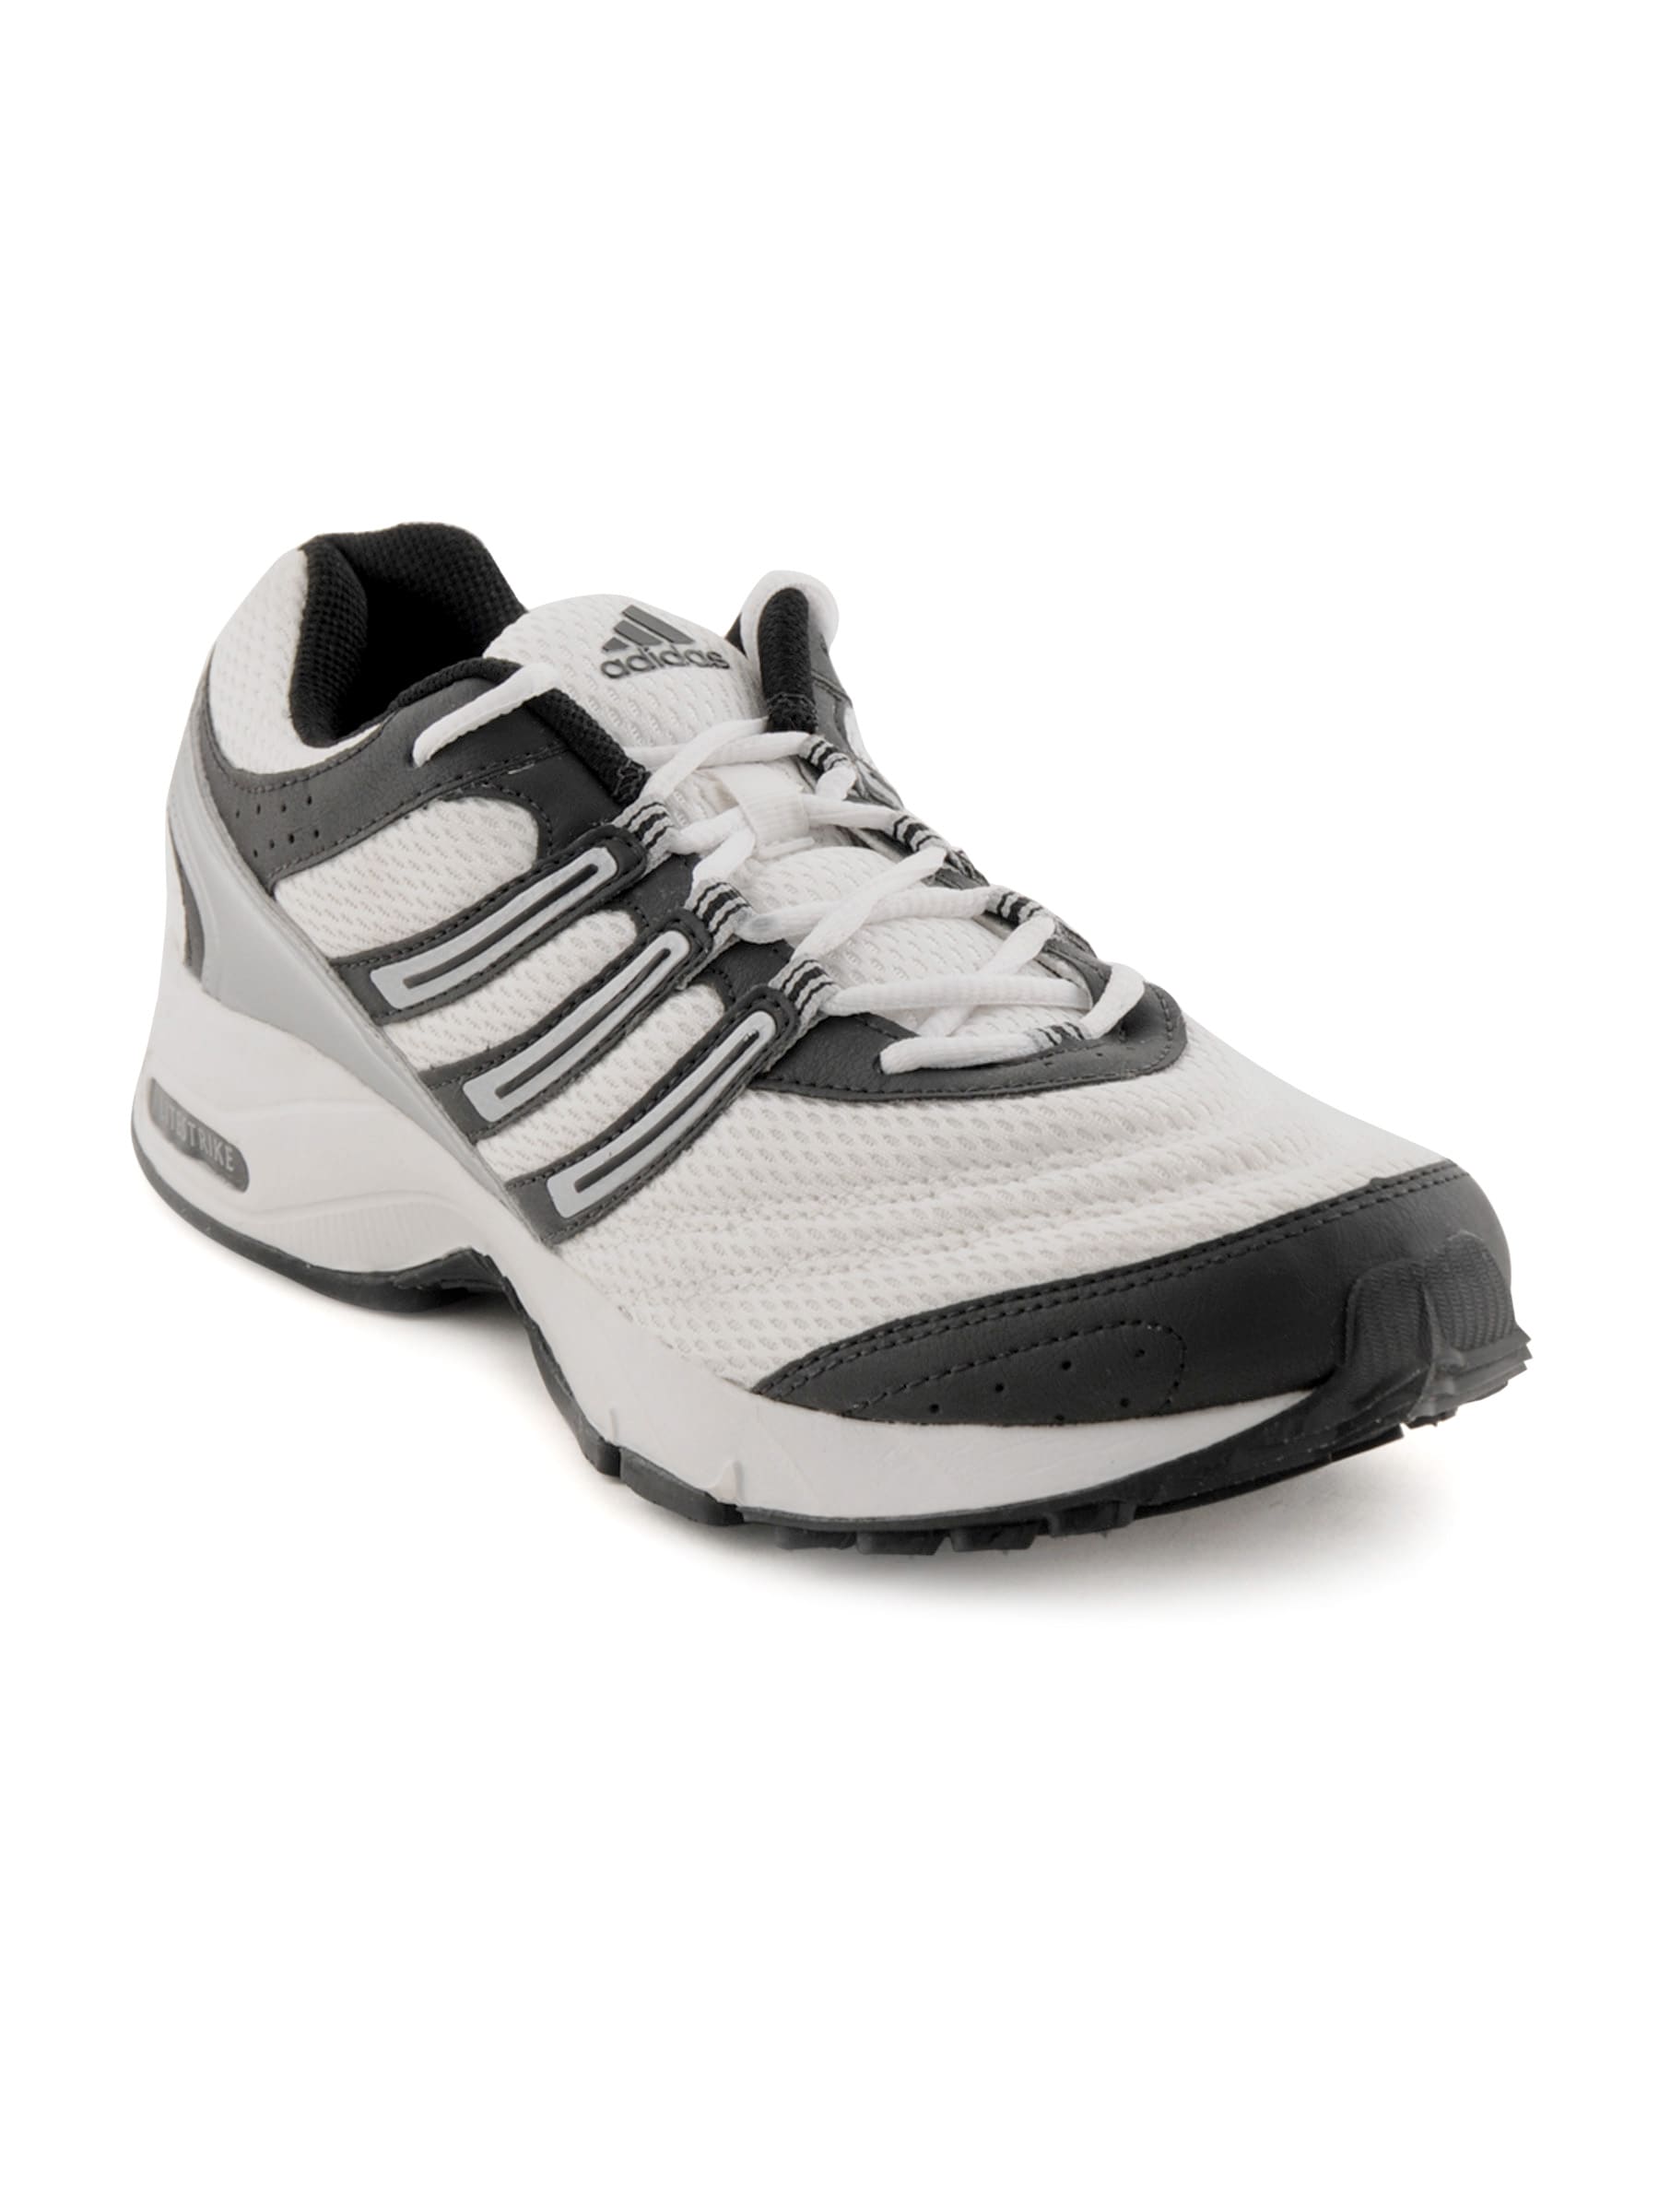 ADIDAS Men Carlton White Running Sports Shoe